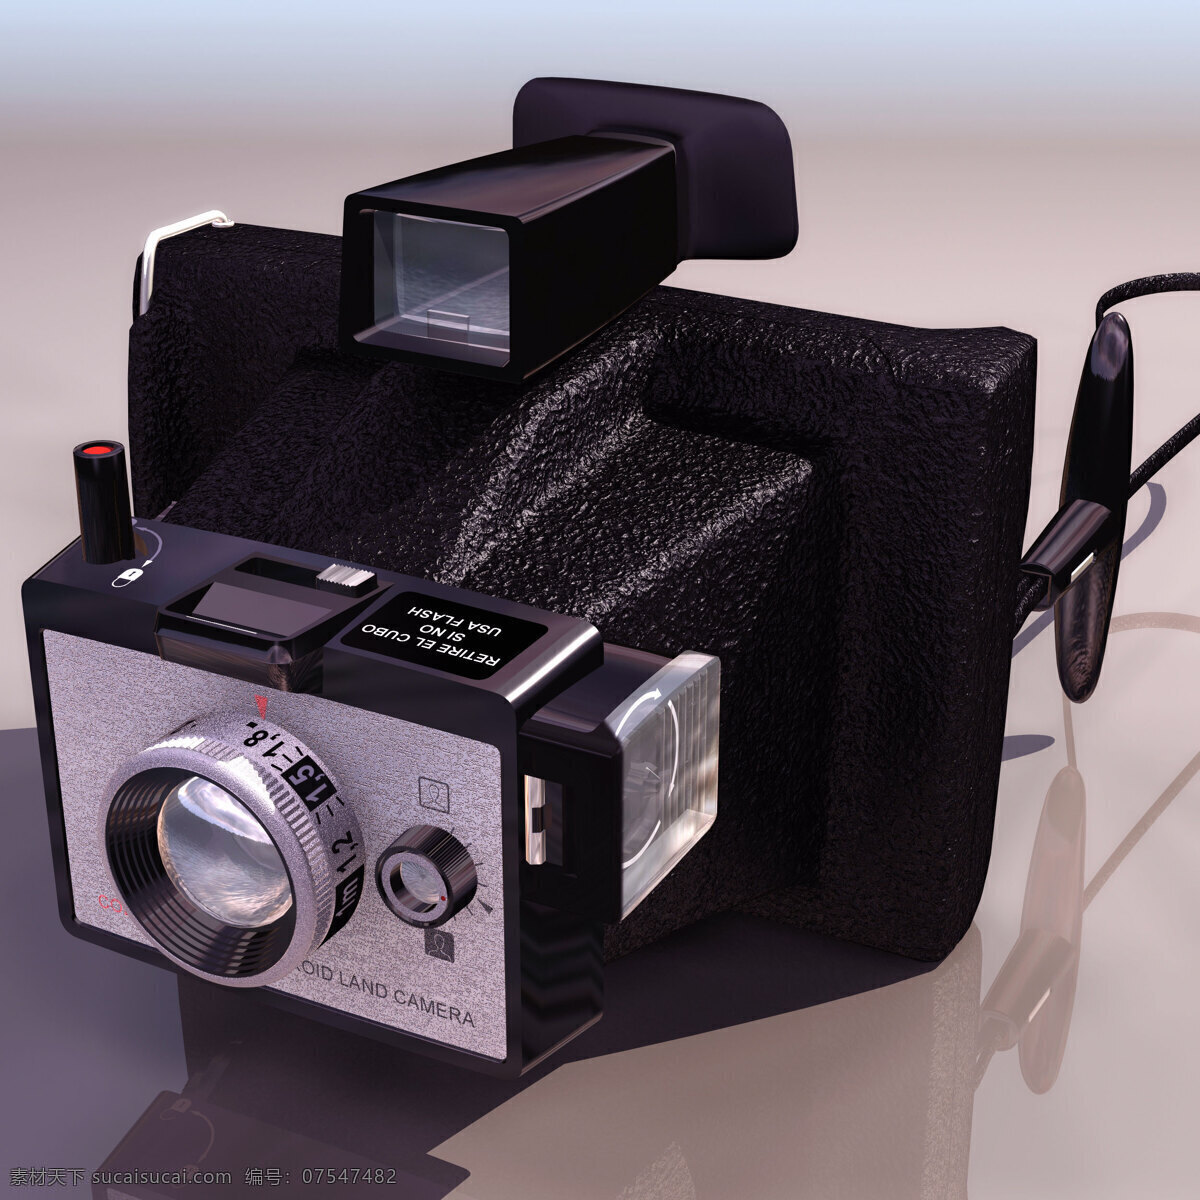 照相机 模型 polaroid 数码电器 相机 照相机模型 3d模型素材 电器模型